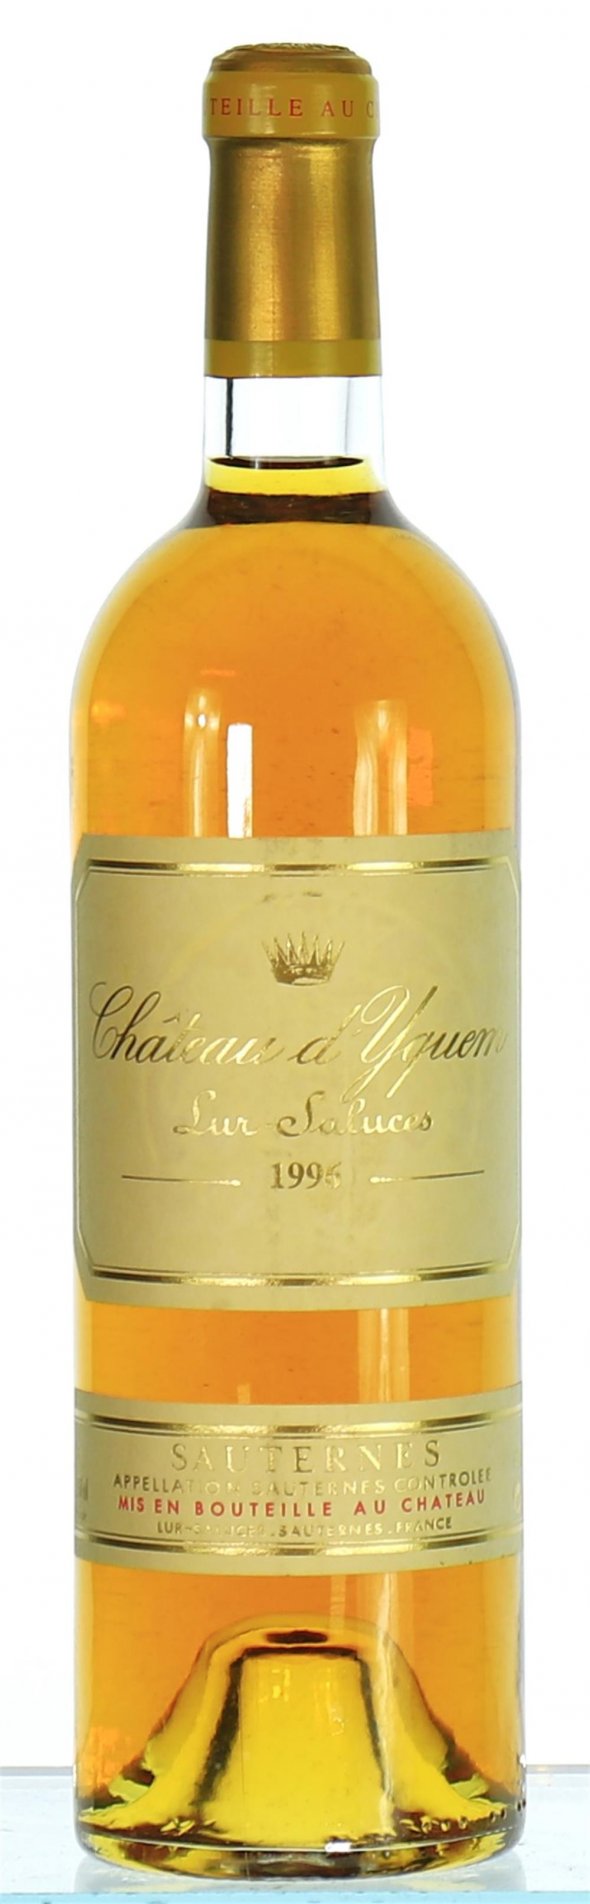 Chateau d'Yquem Premier Cru Superieur, Sauternes